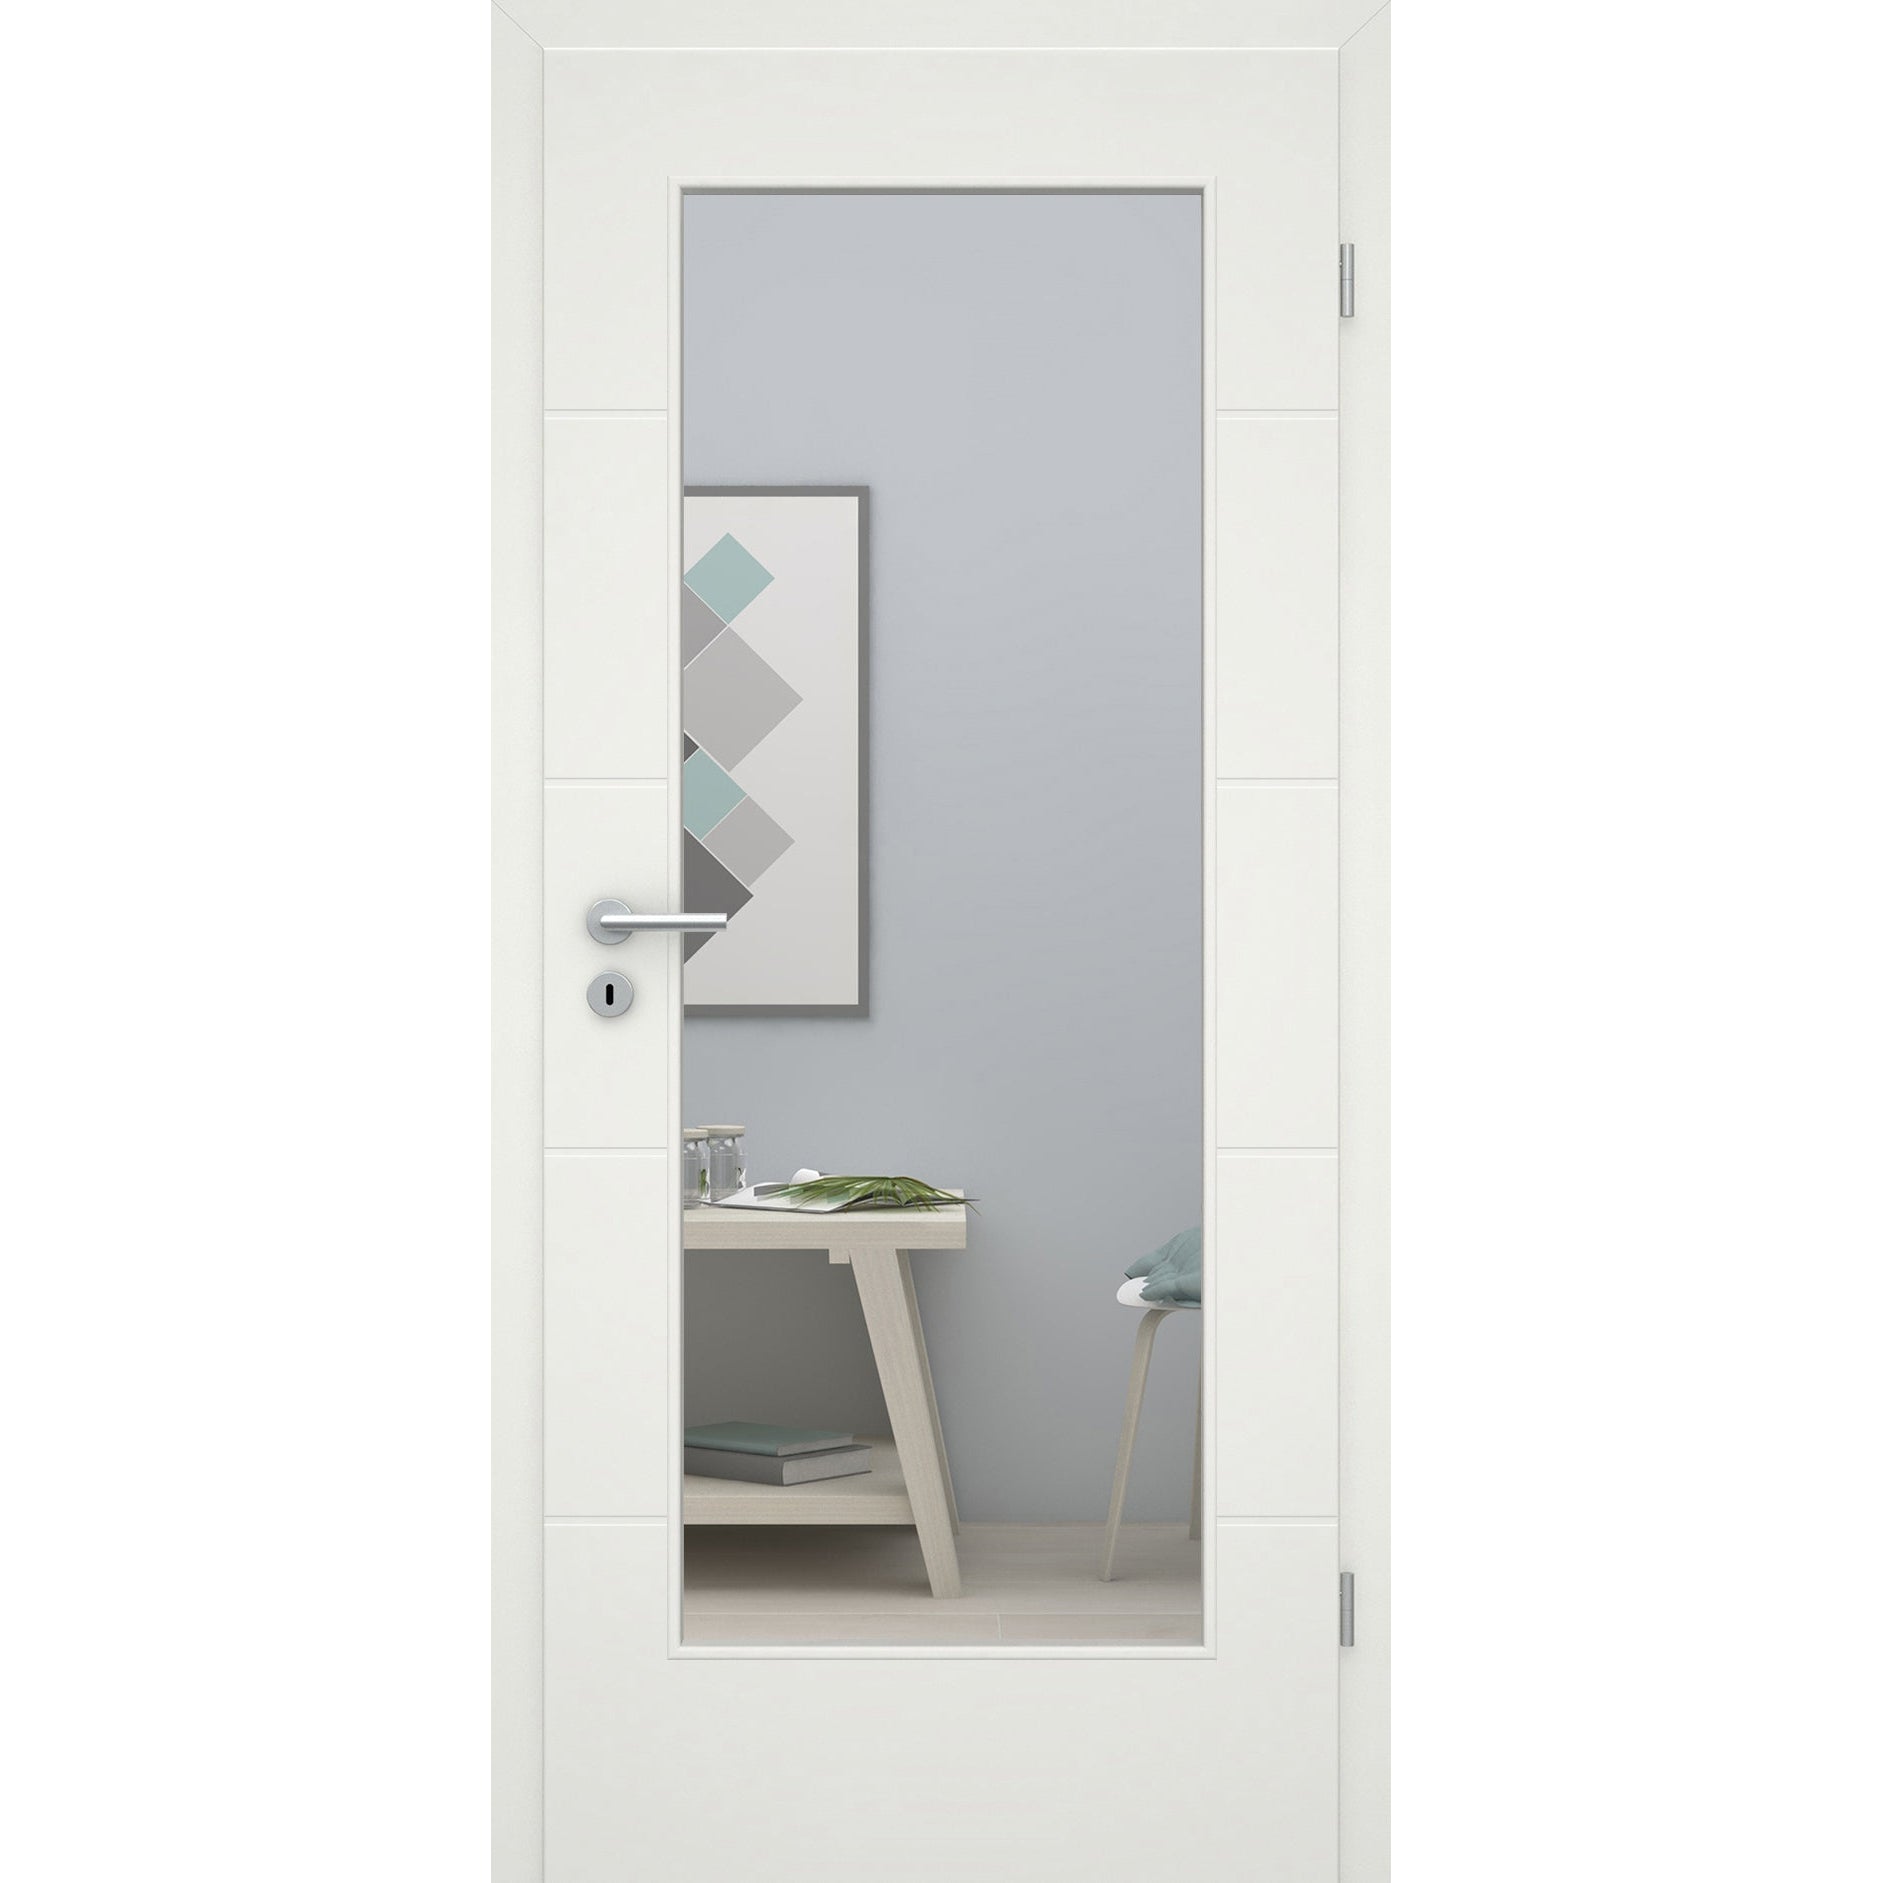 Zimmertür soft-weiß mit 4 Rillen und Lichtausschnitt Eckkante - Modell Designtür Q41LA